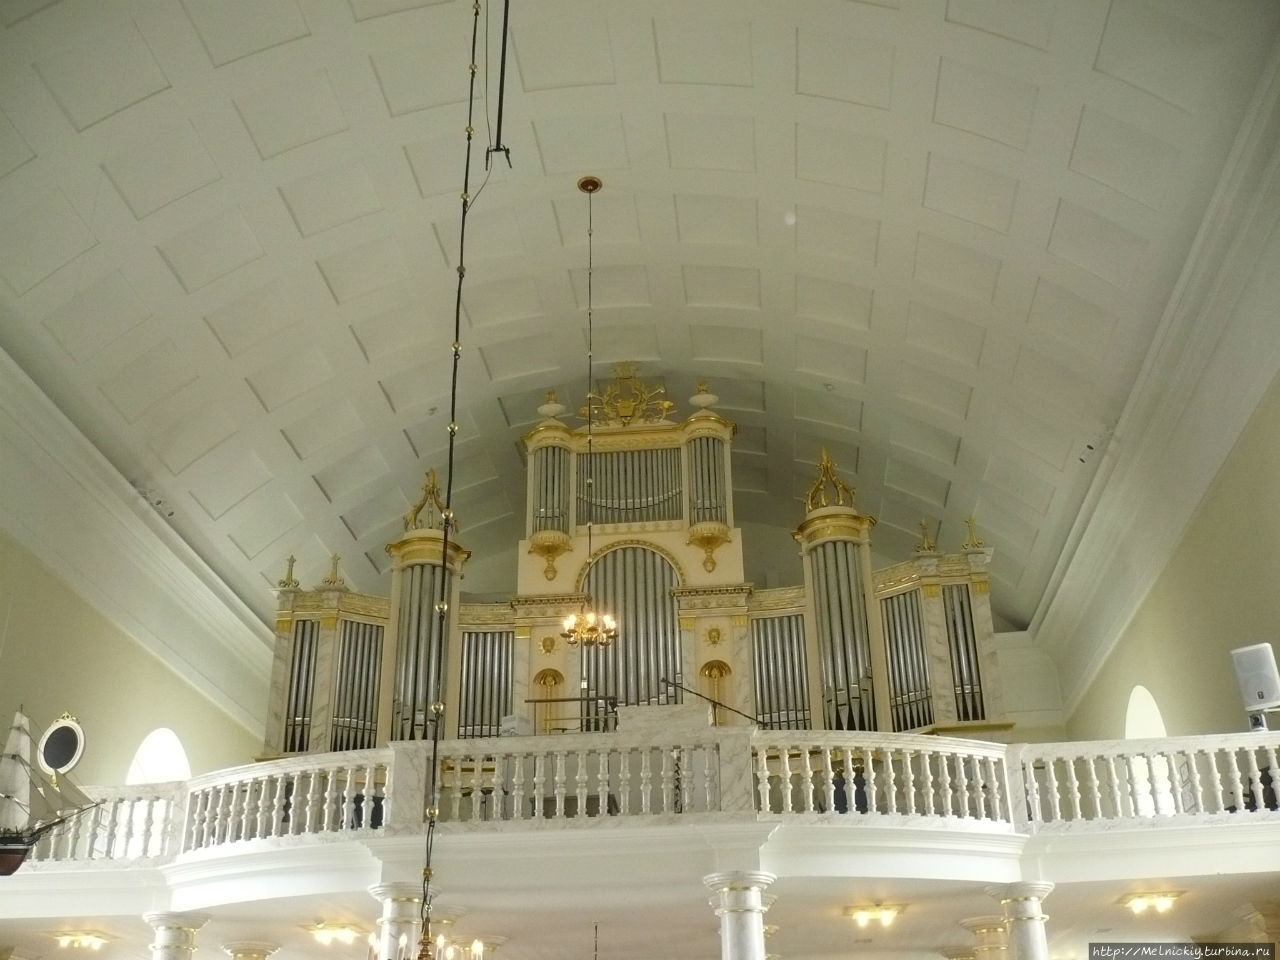 Кафедральный собор имени Густава III Оулу, Финляндия